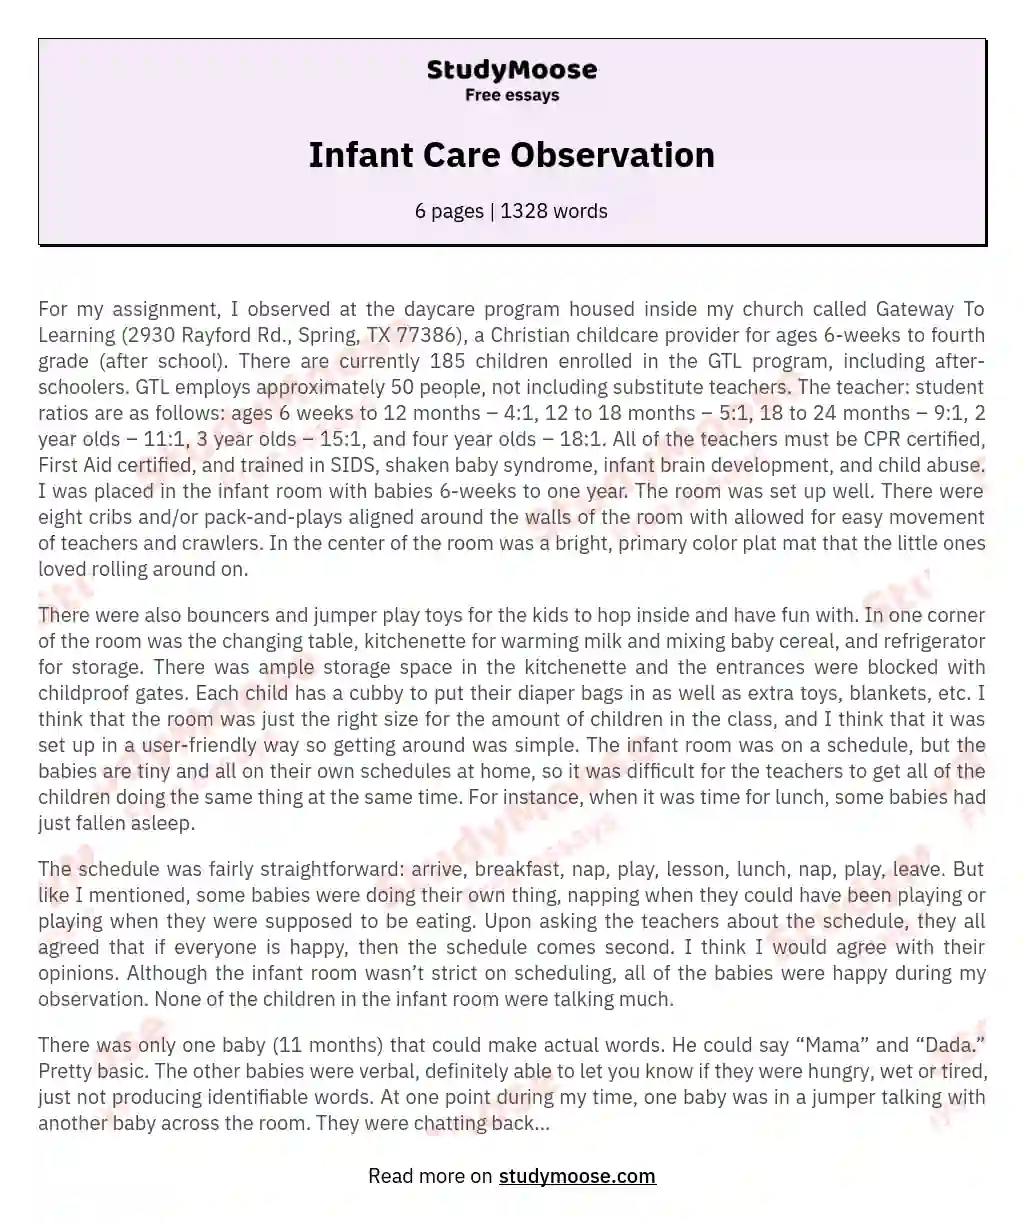 Infant Care Observation essay